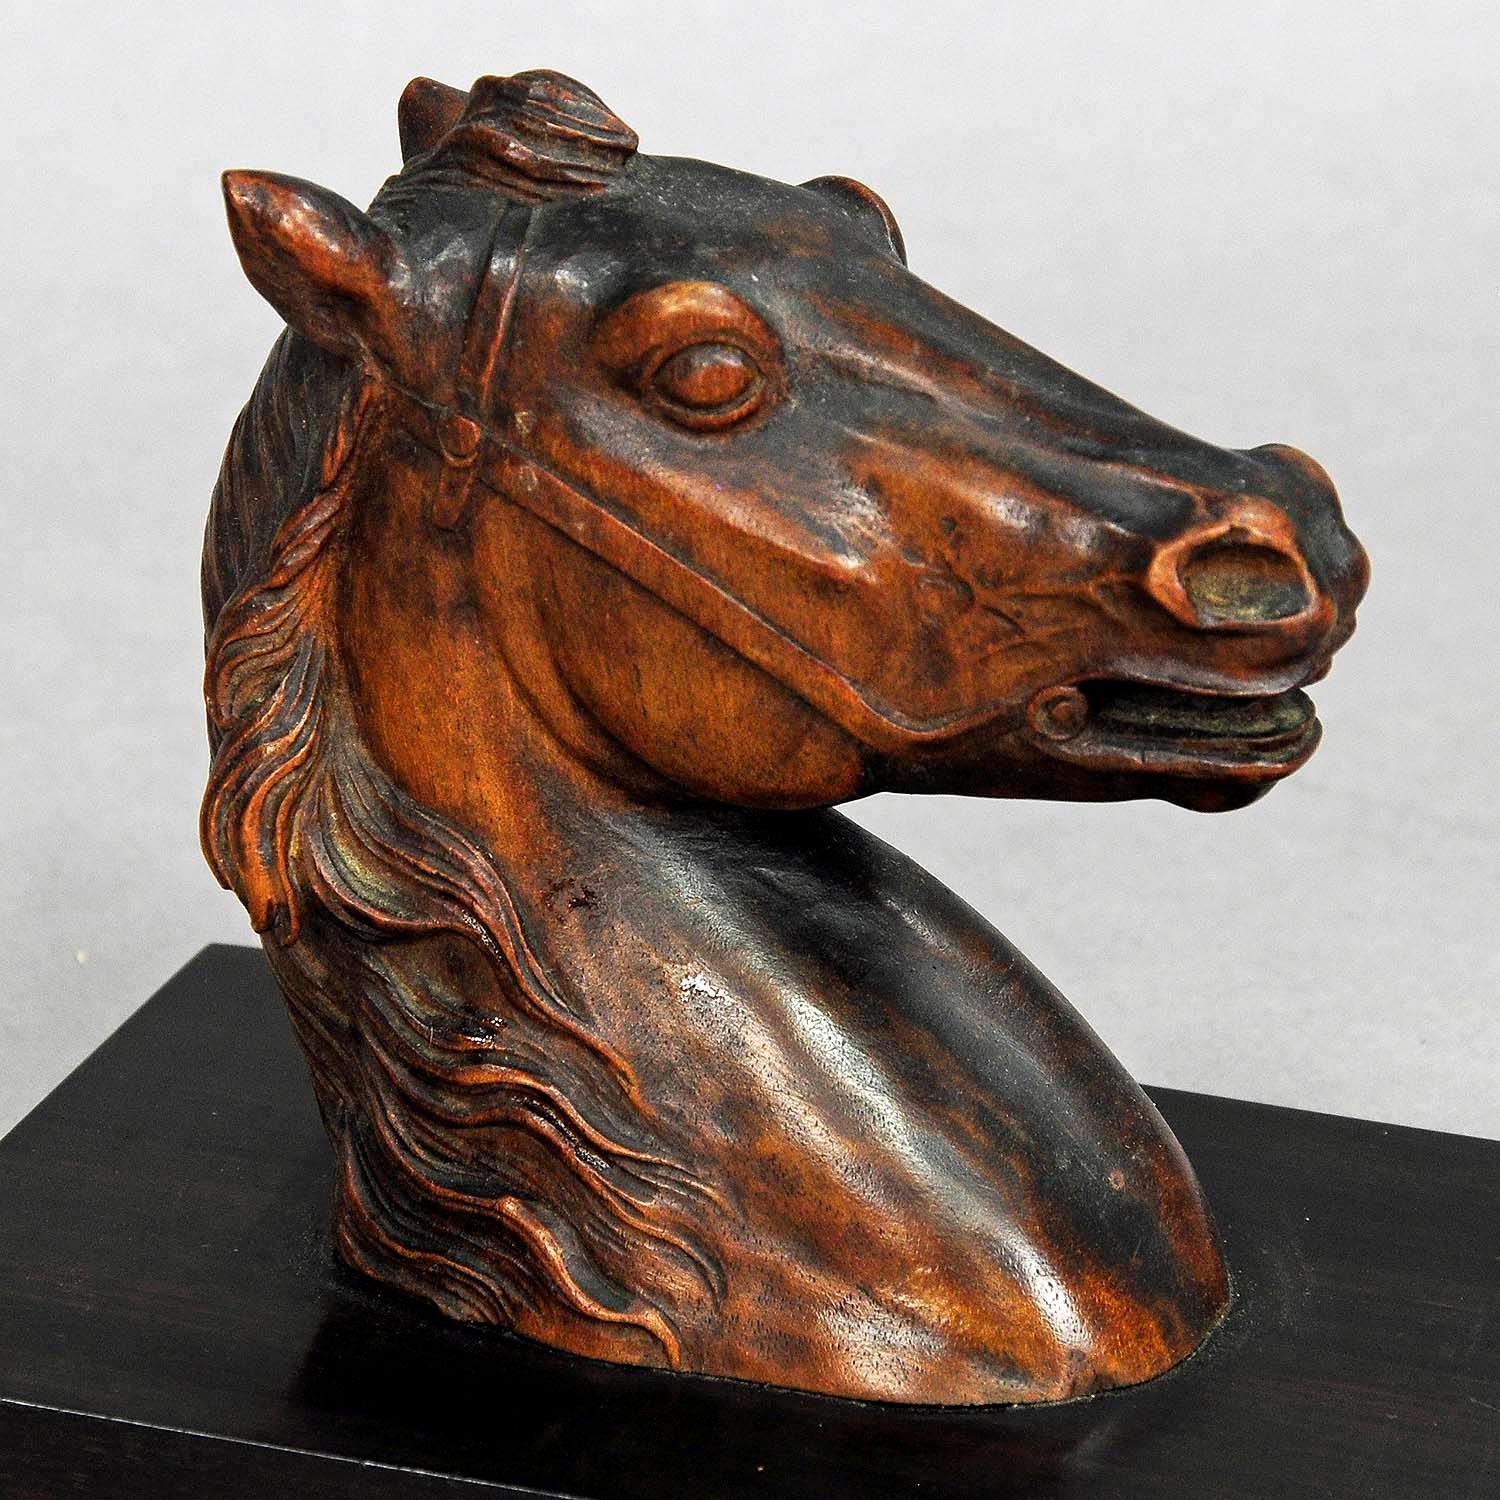 Ein großer geschnitzter Holzkopf eines Pferdes. Er ist auf einem Holzsockel montiert - verwendbar als Schreibtischdekoration oder Briefbeschwerer. Hergestellt in Deutschland ca. 1920.

Maße: Breite 4,13